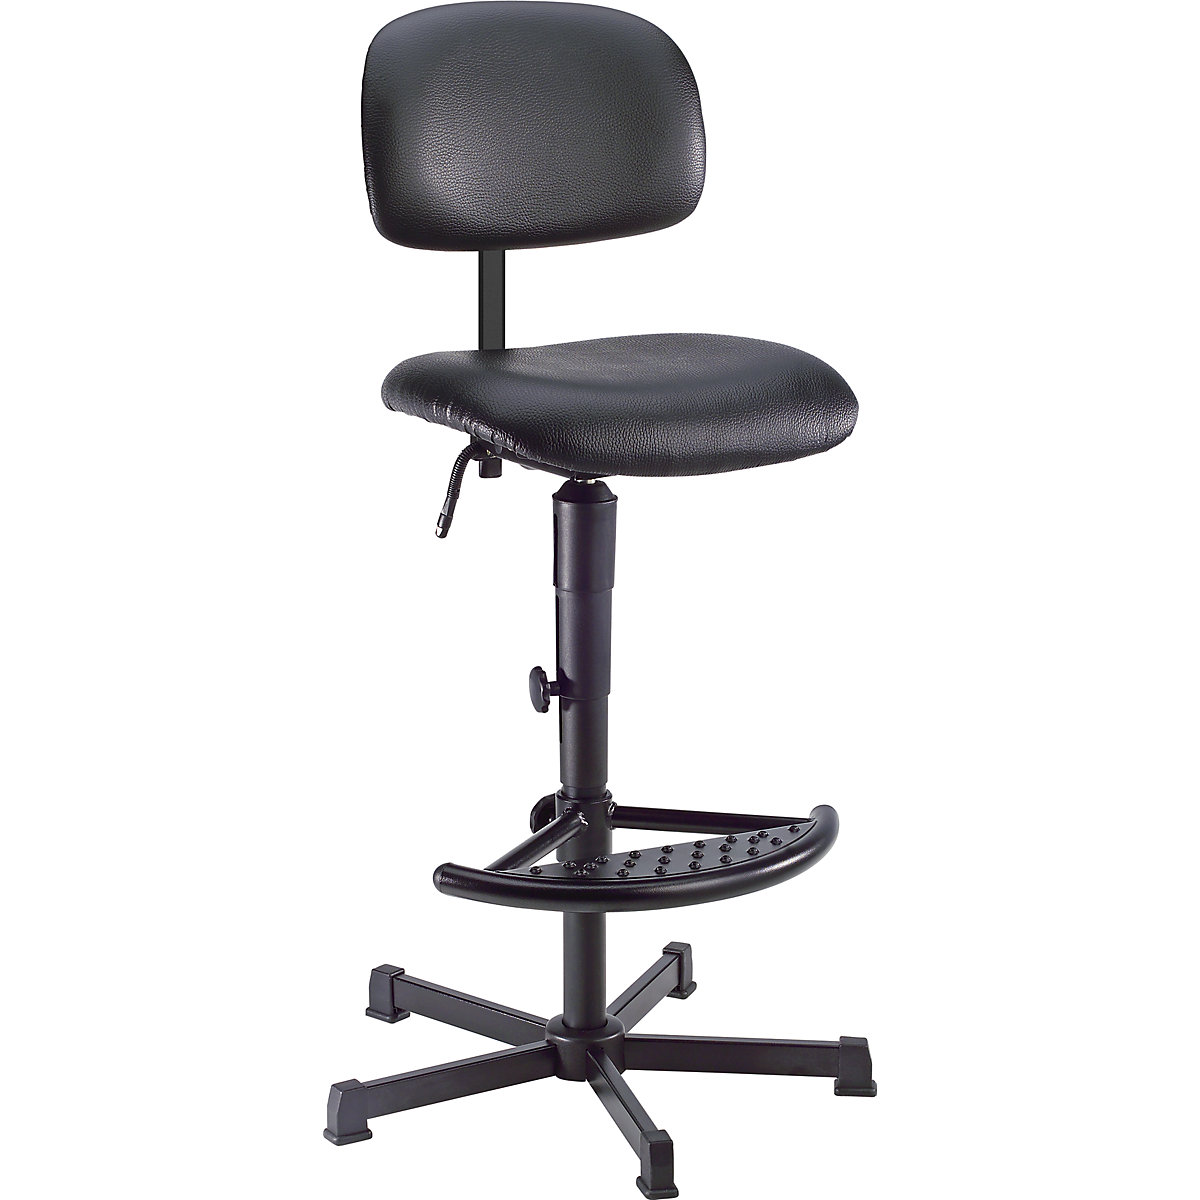 Pracovní otočná židle s přestavováním výšky pomocí klínové drážky – meychair, s patkami a nožní opěrou, koženka-5